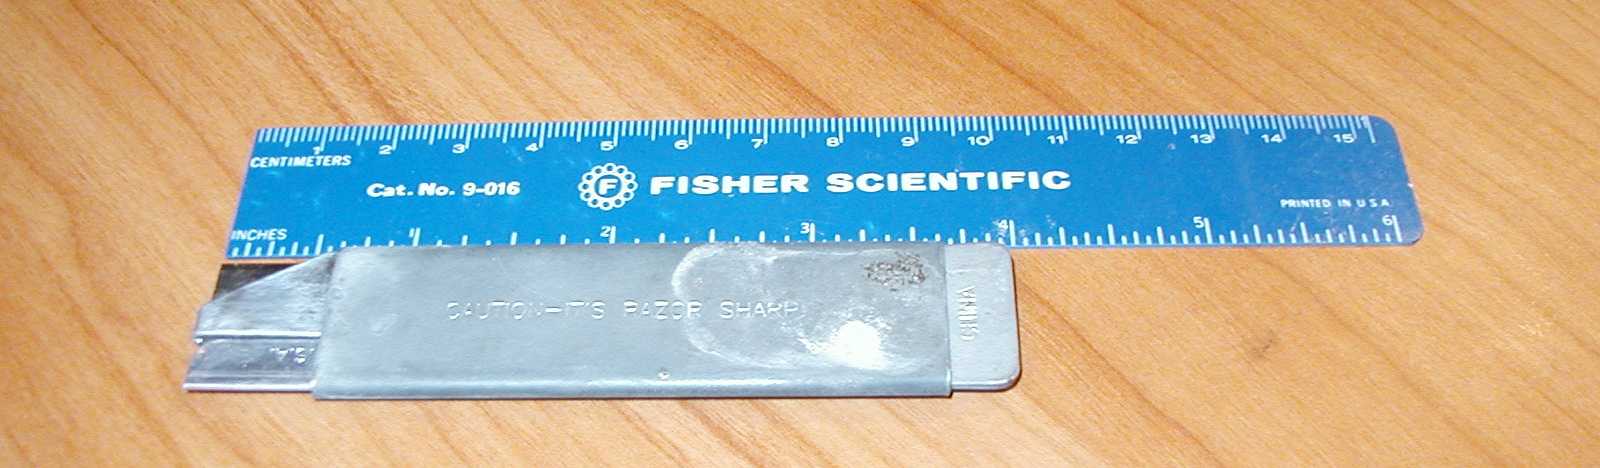 A box cutter compared to a 6" ruler.